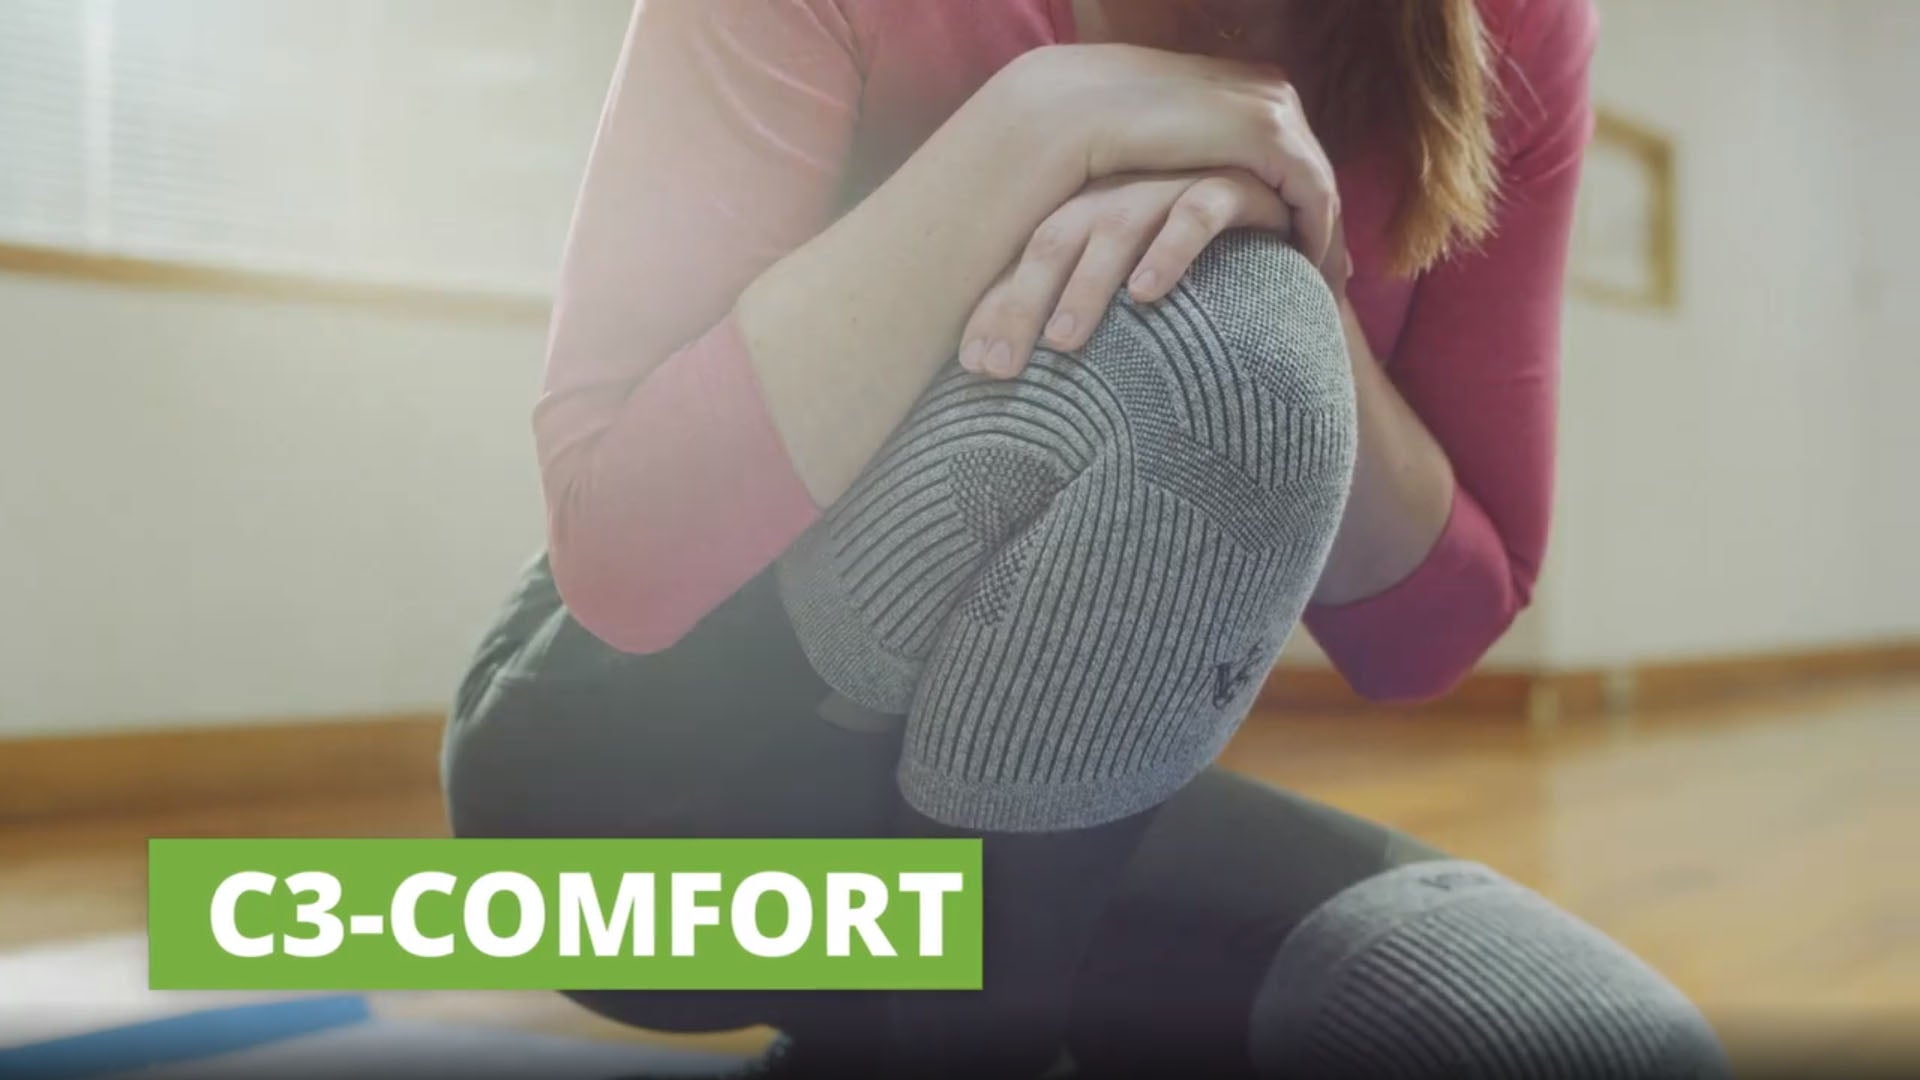 Compression Knee Sleeve C3 Comfort - Vital Video